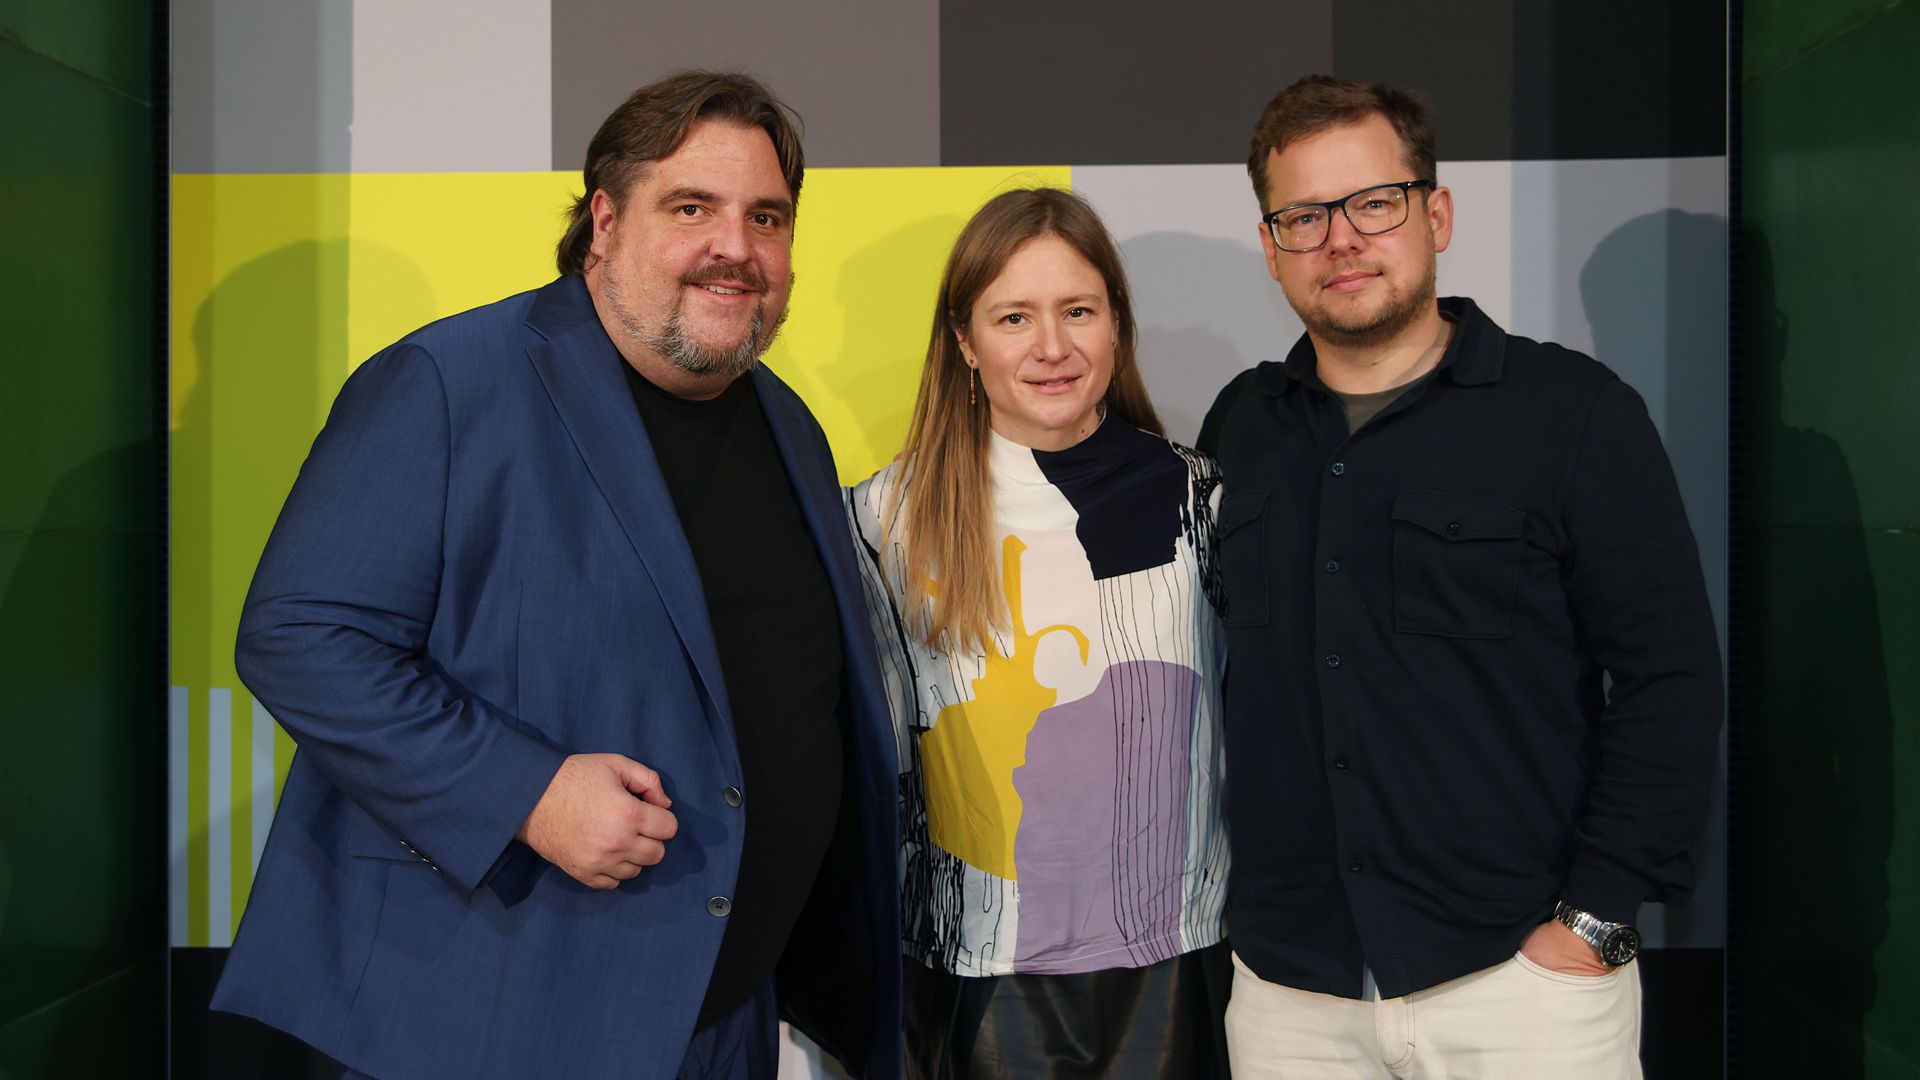 Festivalleiter Urs Spörri (links) mit Schauspielerin Julia Jentsch und Producer Quirin Schmidt vom Filmteam „Der Pass - Staffel 2“.